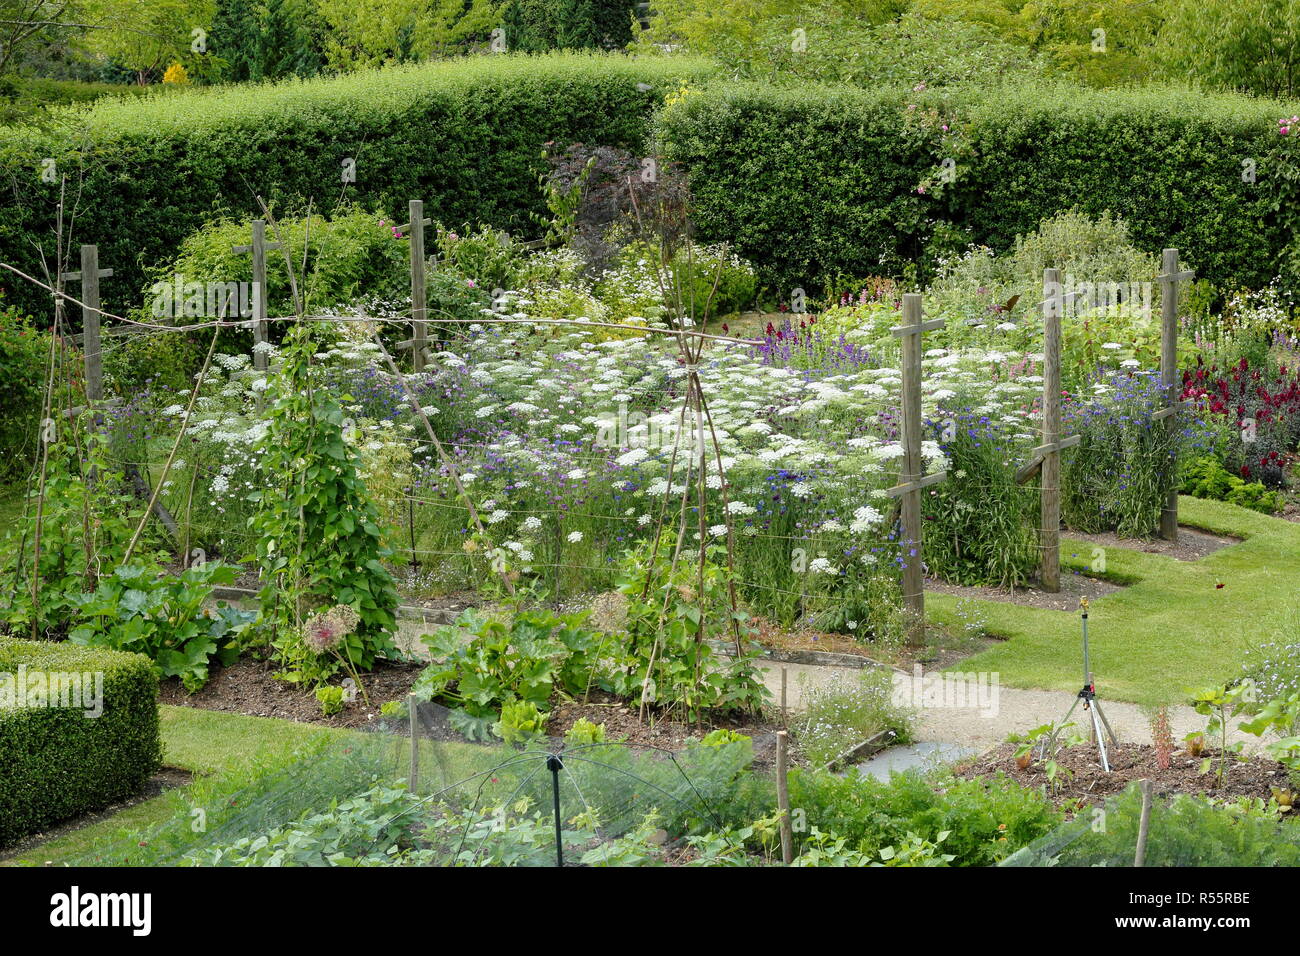 Einige der Gärten im Easton Walled Gardens, Easton in der Nähe von Grantham,. Lincolnshire, Großbritannien. Gemüsebeete und schneiden Garten abgebildet ist. Stockfoto